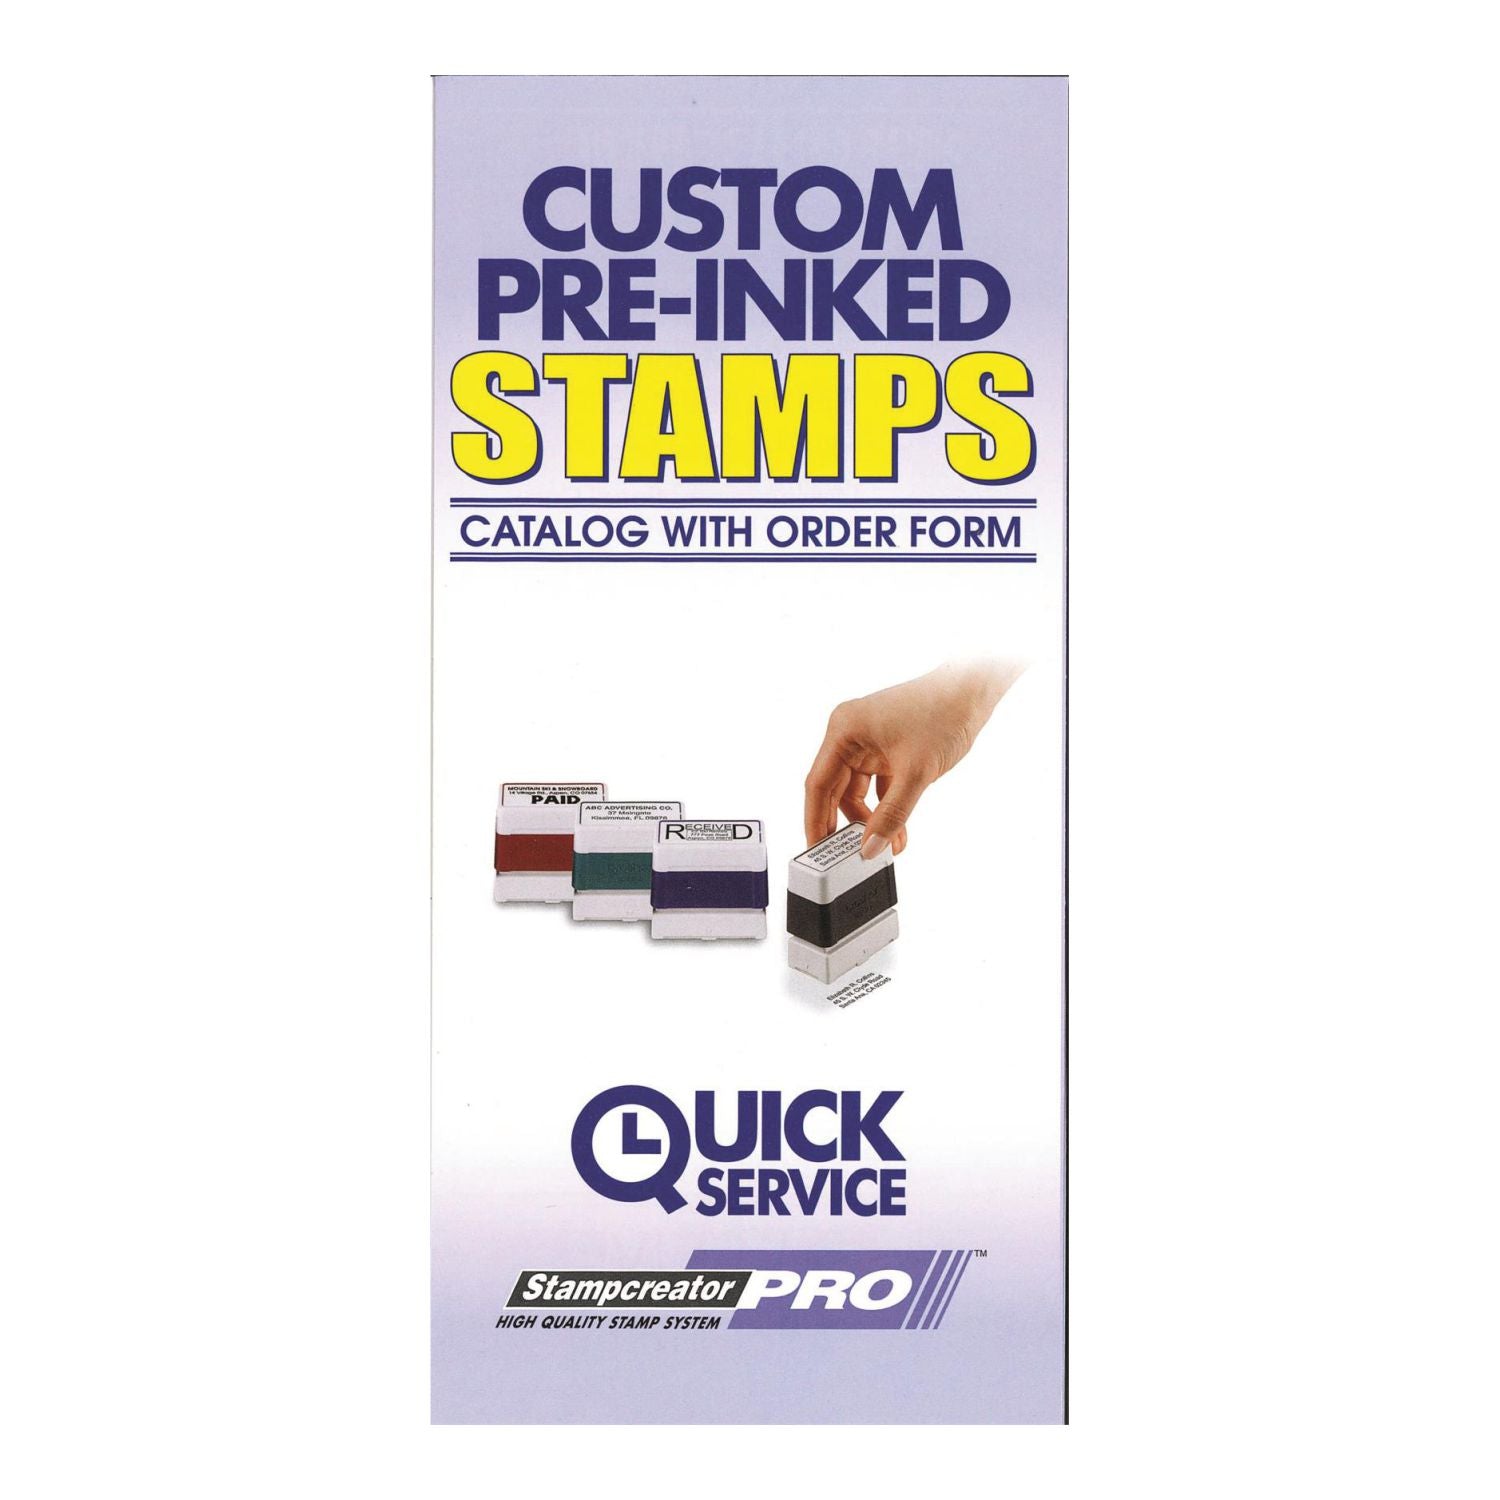 Stampcreator Stamp Pamphlets - Rubber Stamp Materials